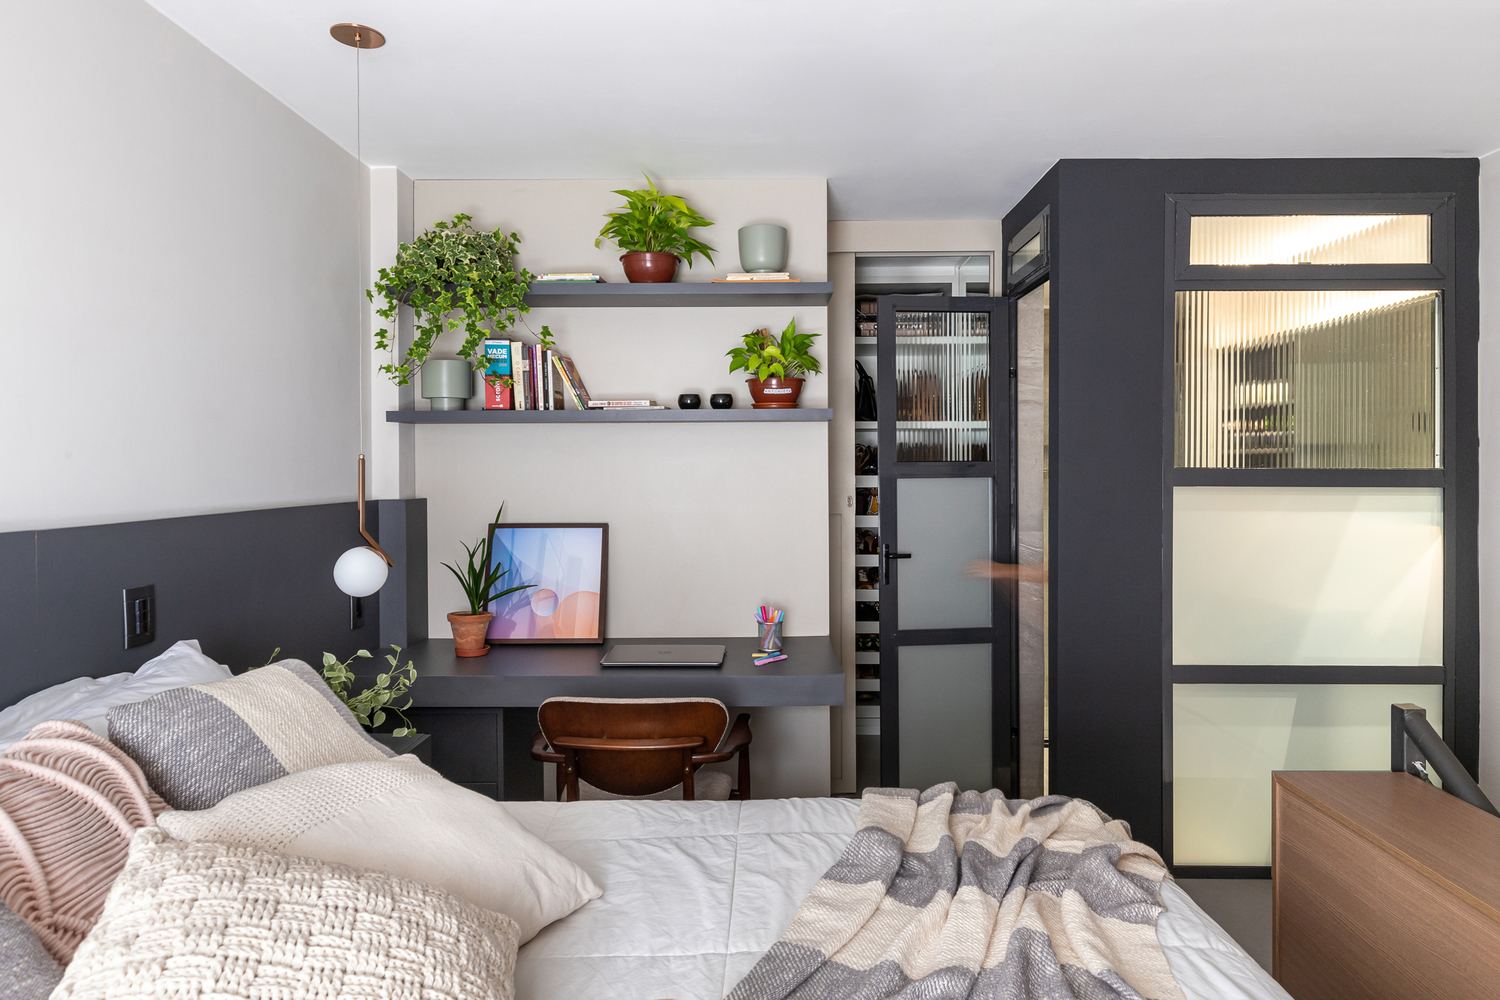  Bên cạnh giường ngủ là hệ bàn kết hợp với kệ đựng đồ. Căn phòng nhỏ xinh vẫn trở nên tiện lợi khi được bố trí như một căn phòng riêng biệt.